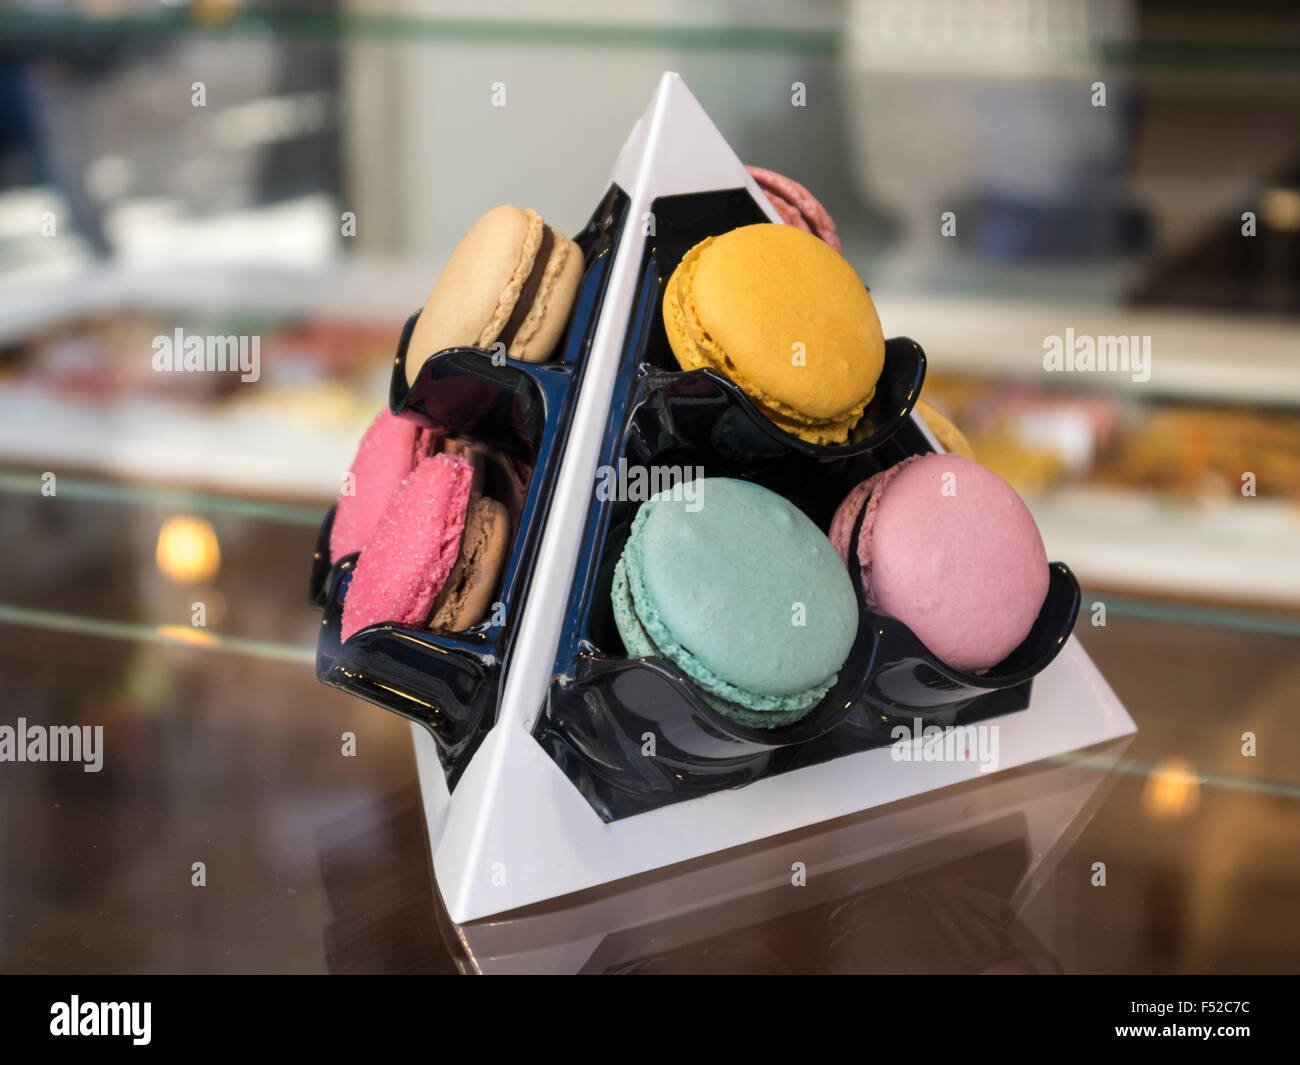 Verschiedenen Macarons in verschiedenen Farben auf einem Tetraeder-förmigen Display. Stockfoto